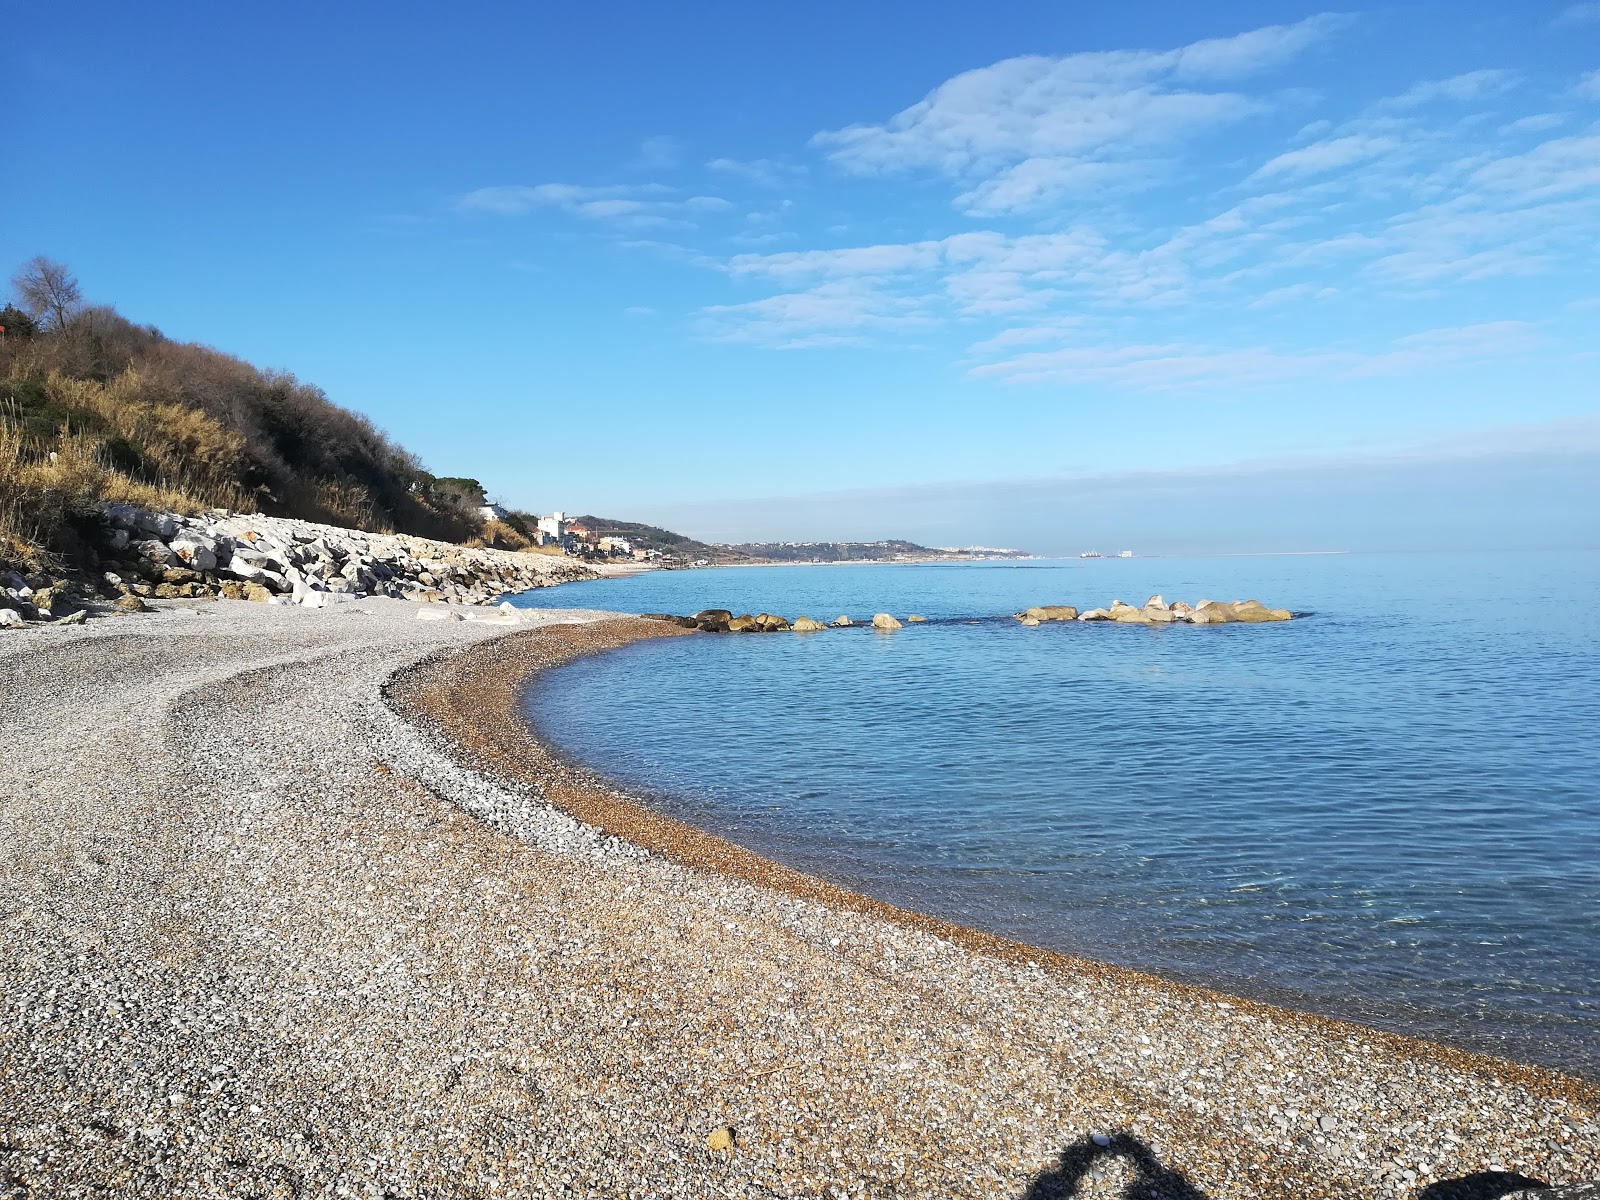 Photo of Spiaggia di Calata Turchino with small multi bays